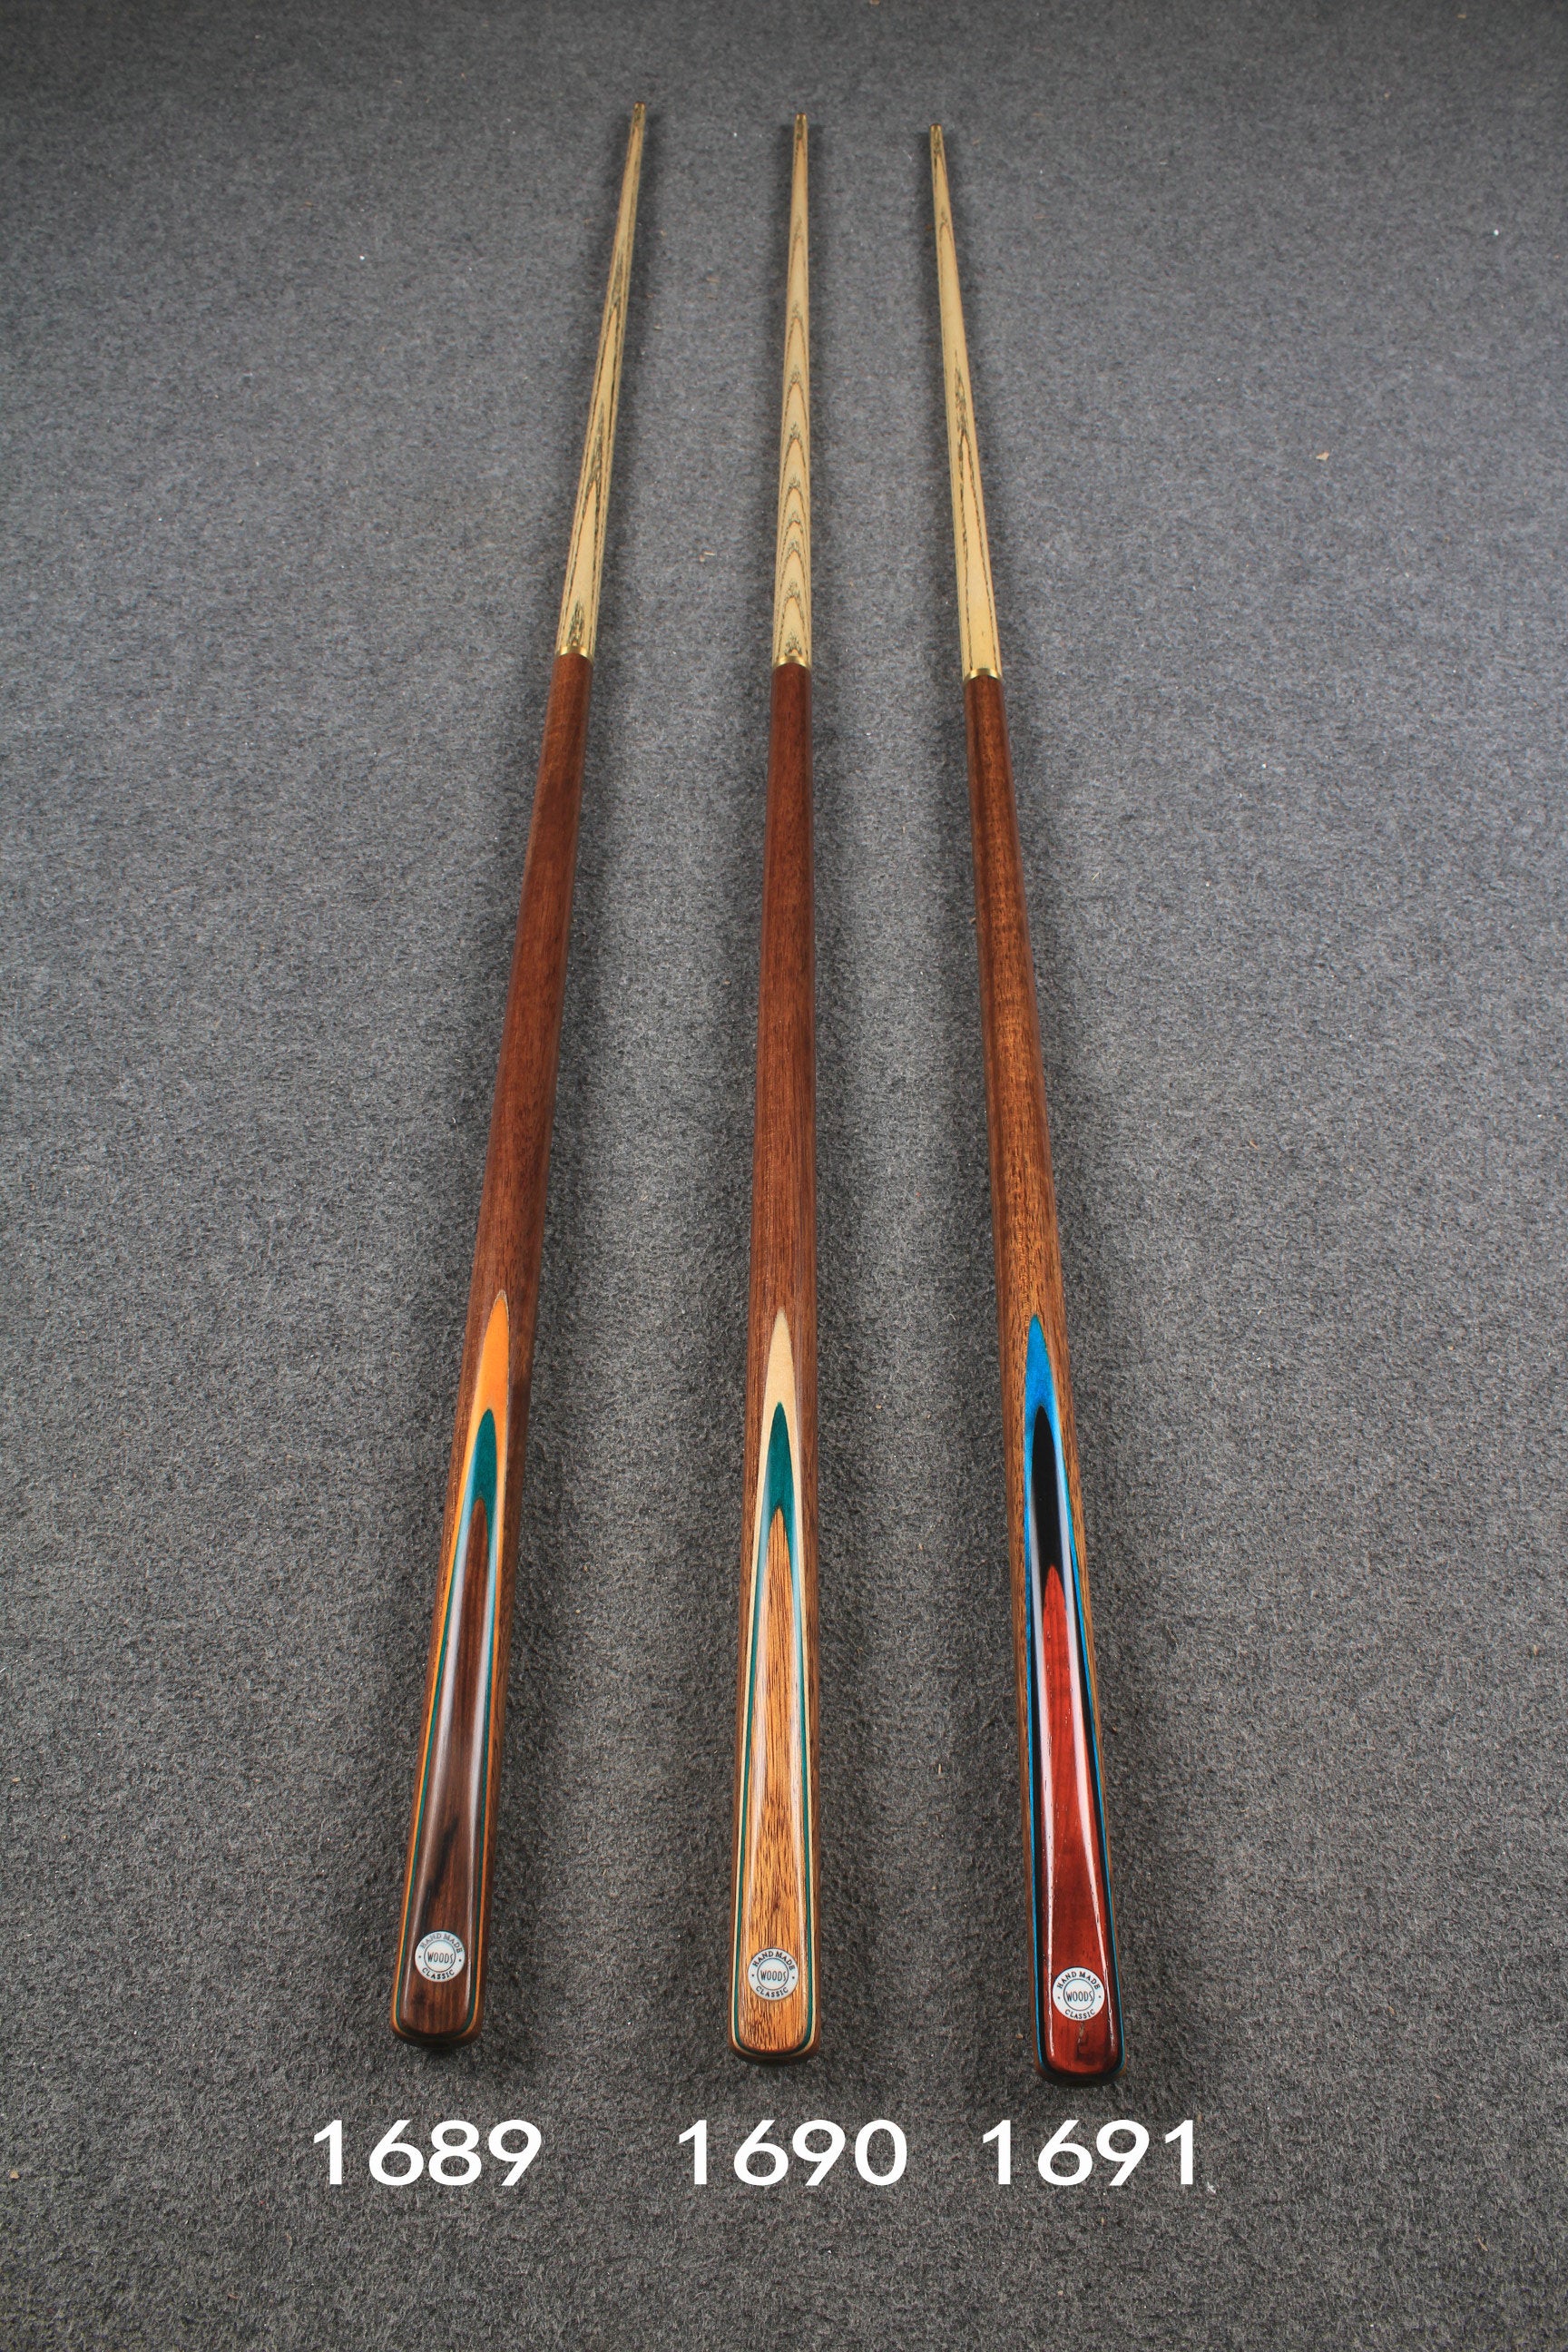 WOODS CUES, 1/2 handmade ash 52" snooker / pool cue #1689-#1691